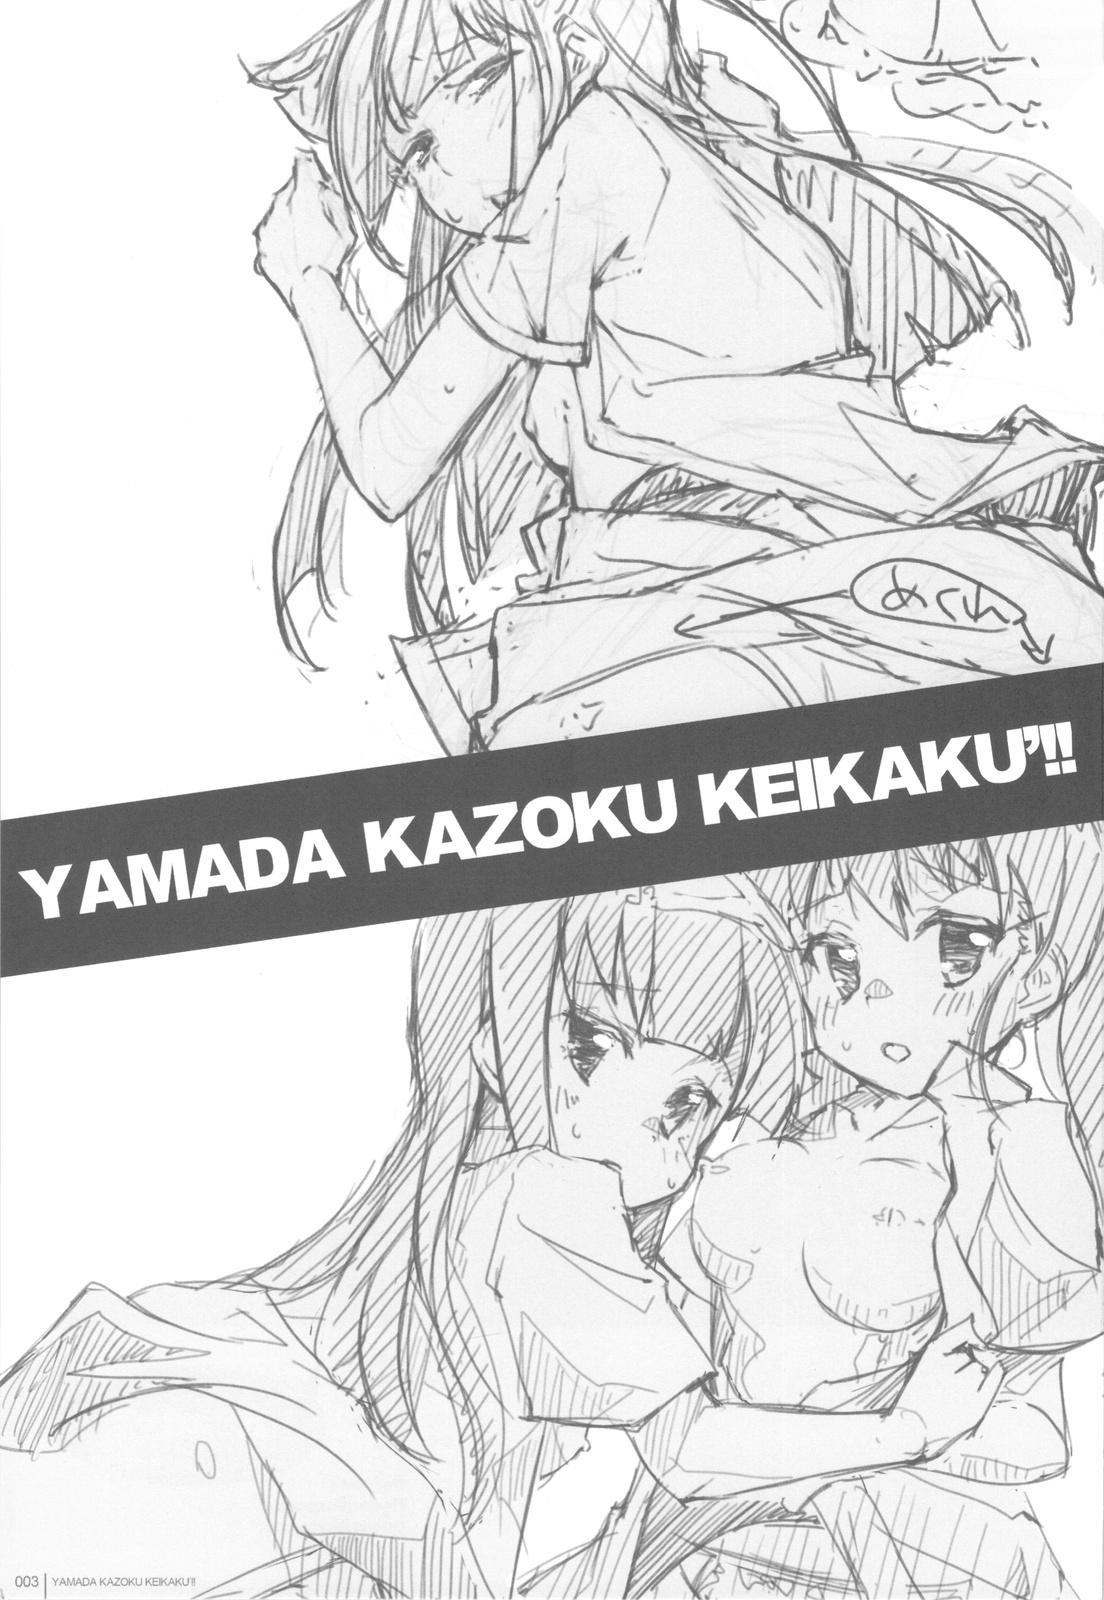 Yamada Kazoku Keikaku'!! 1